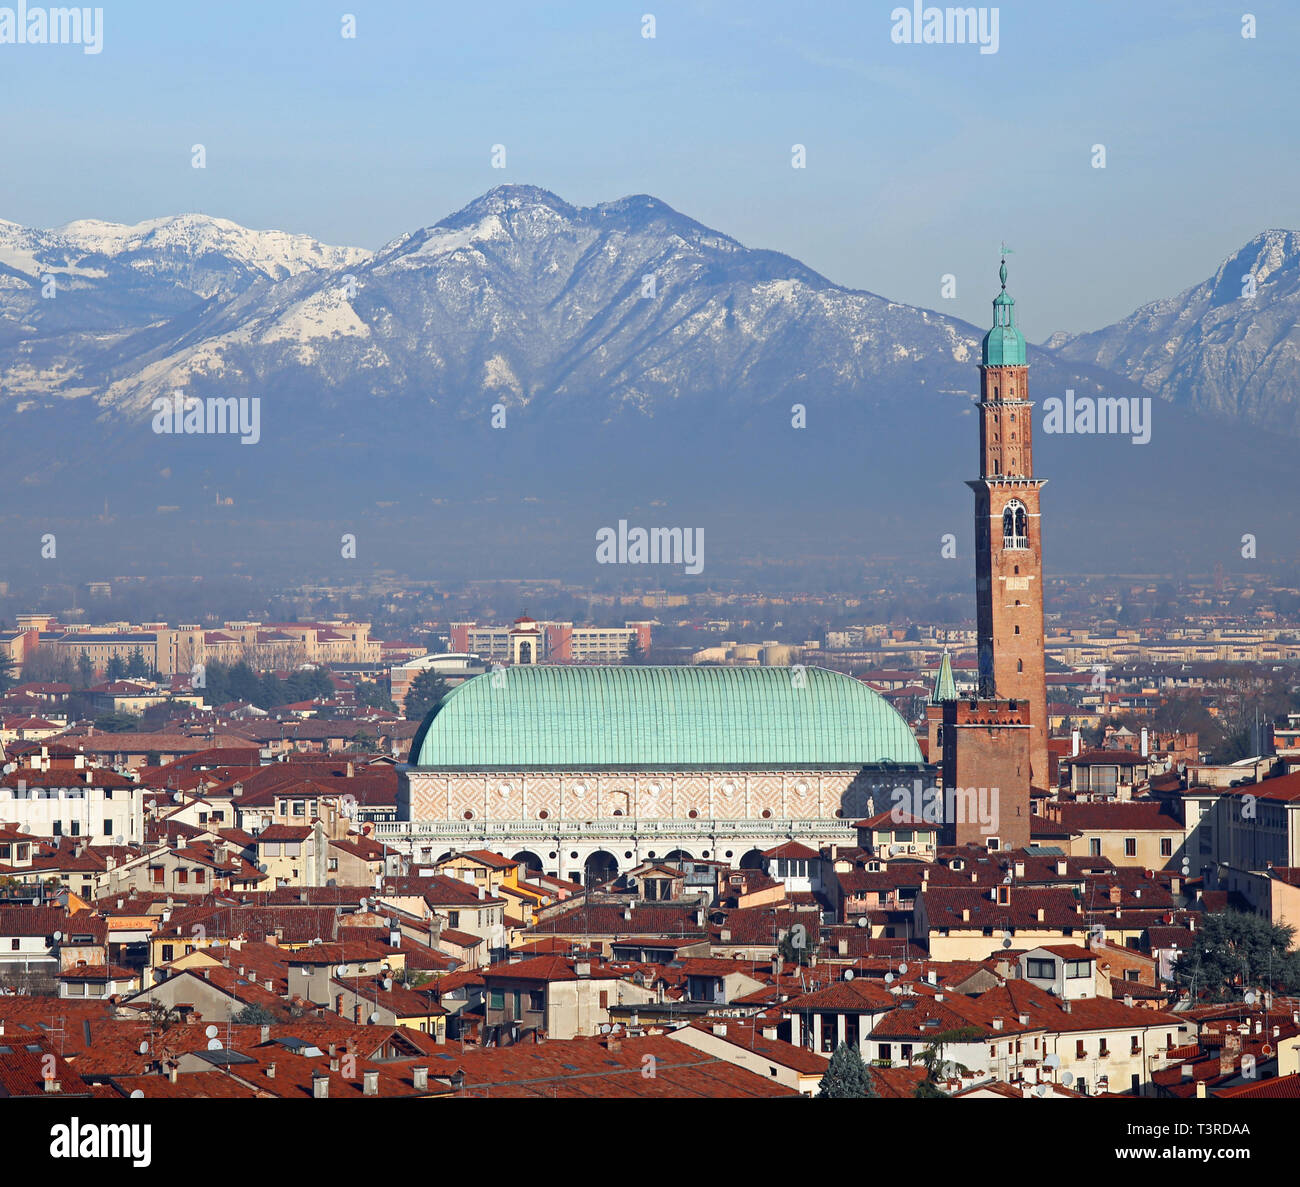 Case e il monumento storico chiamato Basilica Palladiana a Vicenza Città in Italia Foto Stock